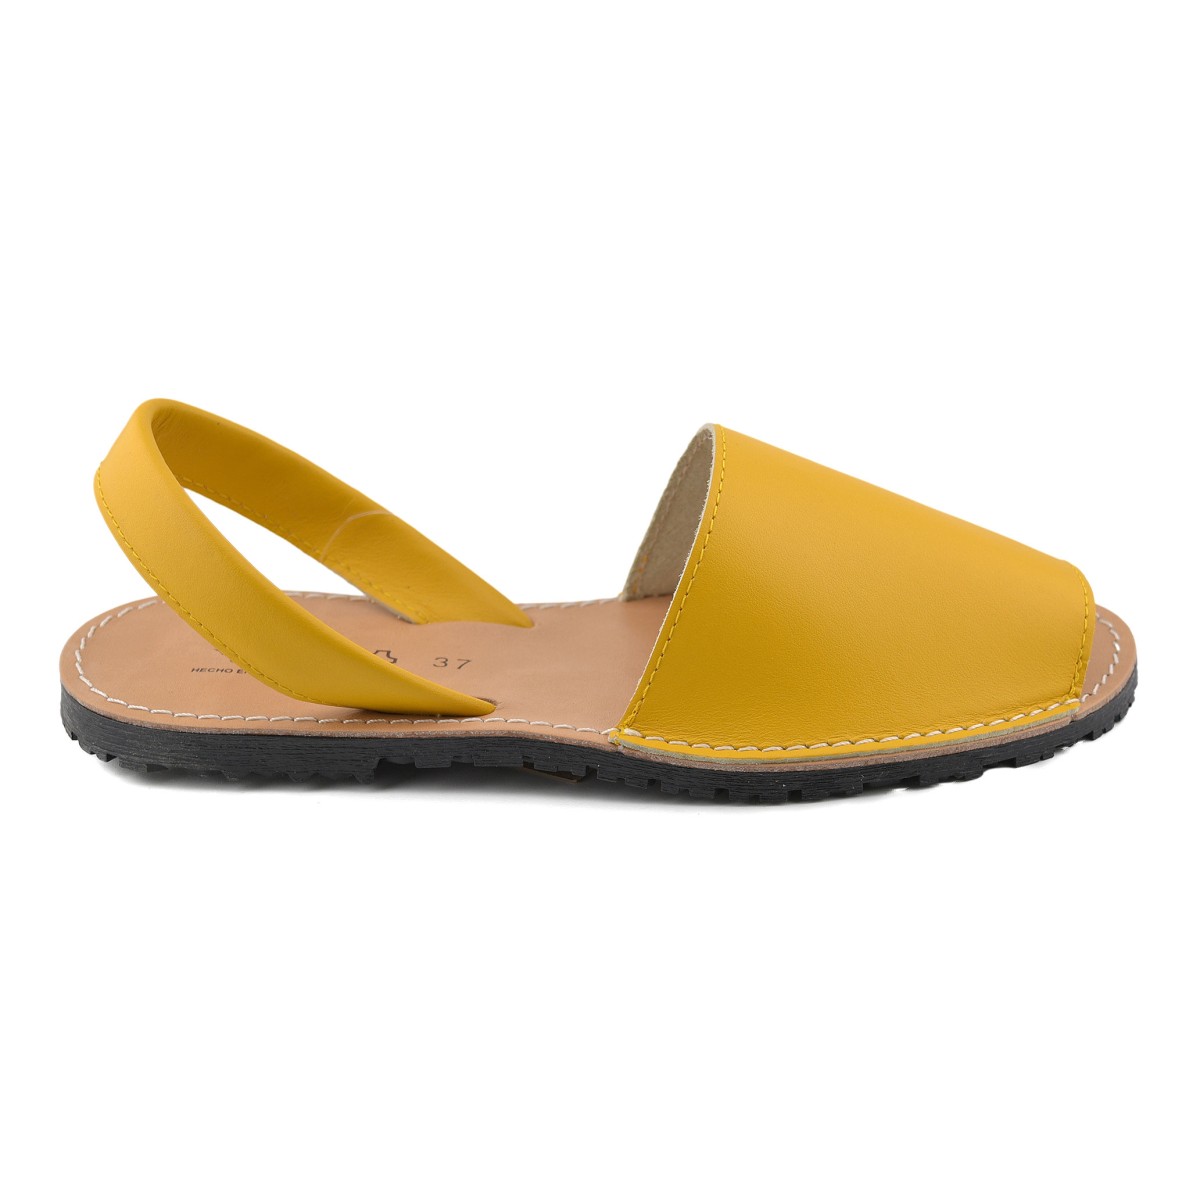 Avarcas Menorquinas geel leren sandalen van CBP